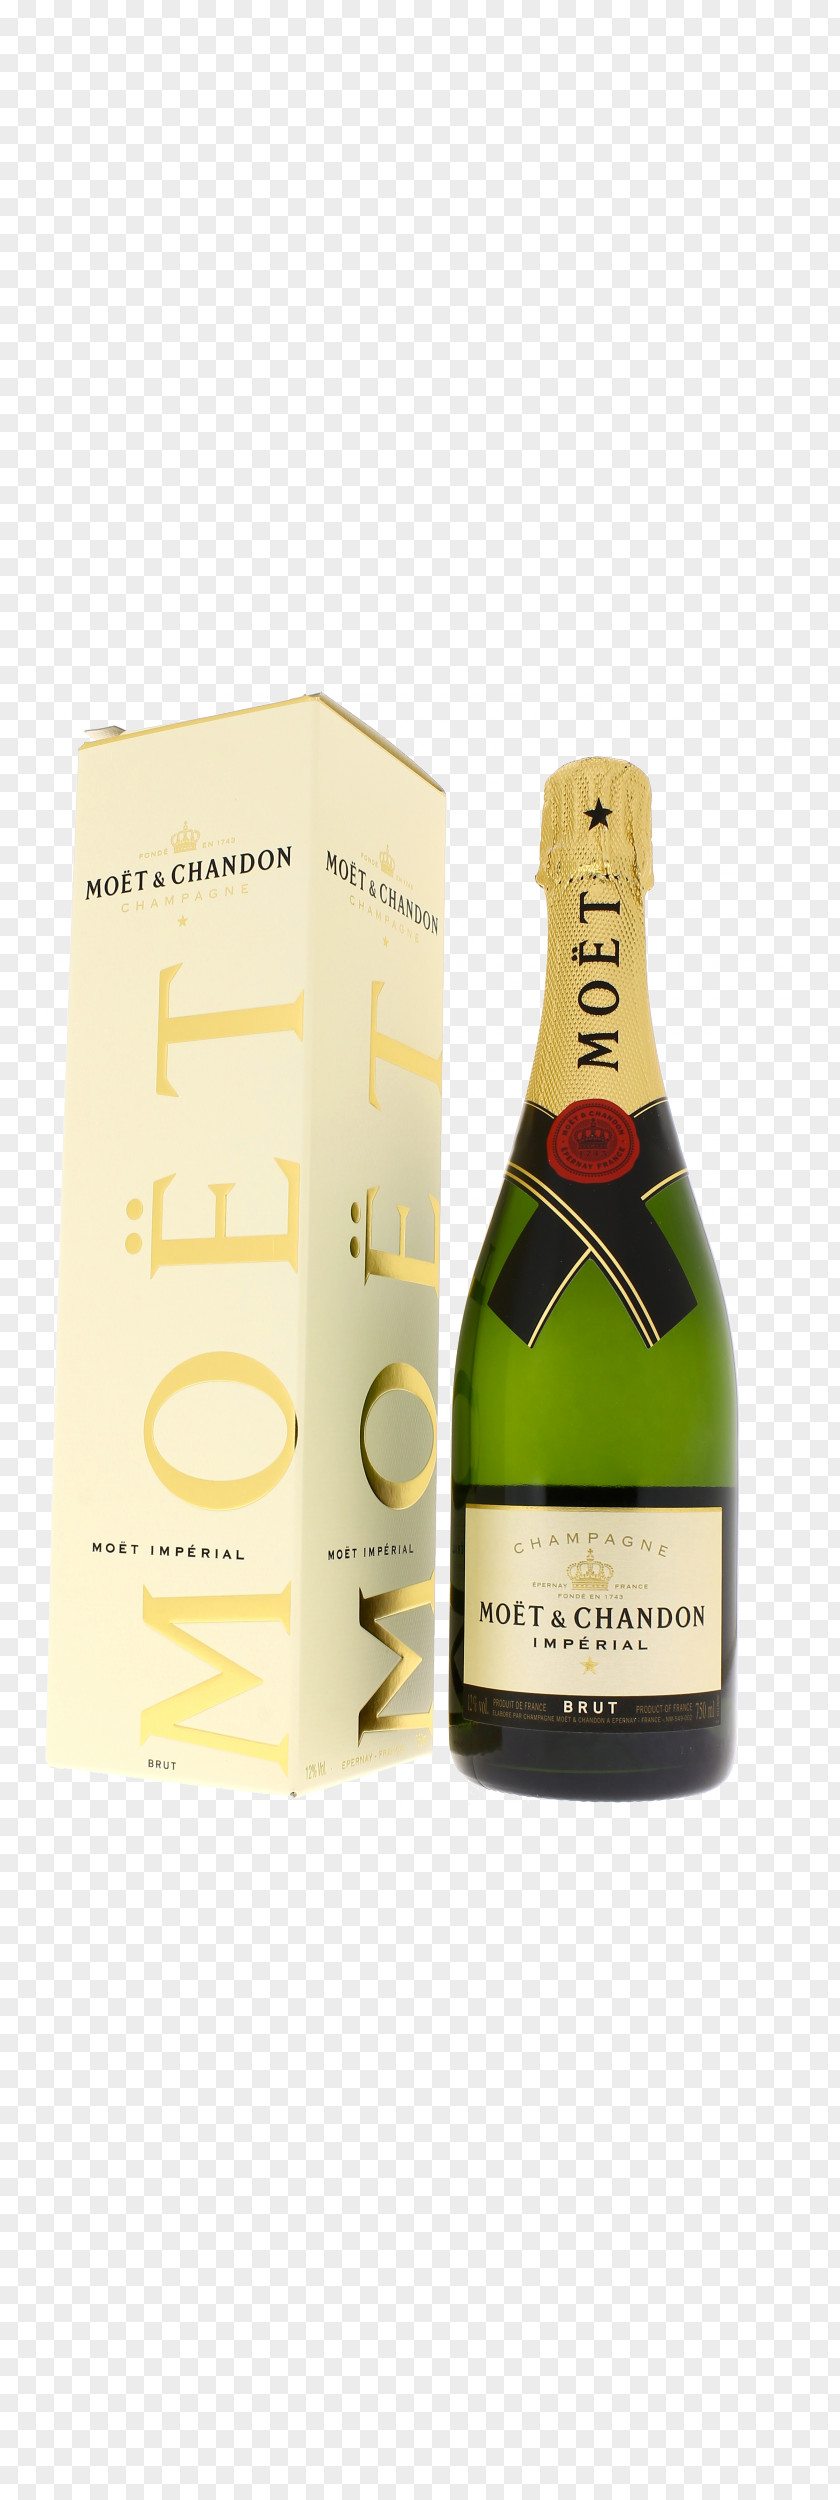 Champagne Moet Chandon Imperial Moët & Brut Bottle PNG